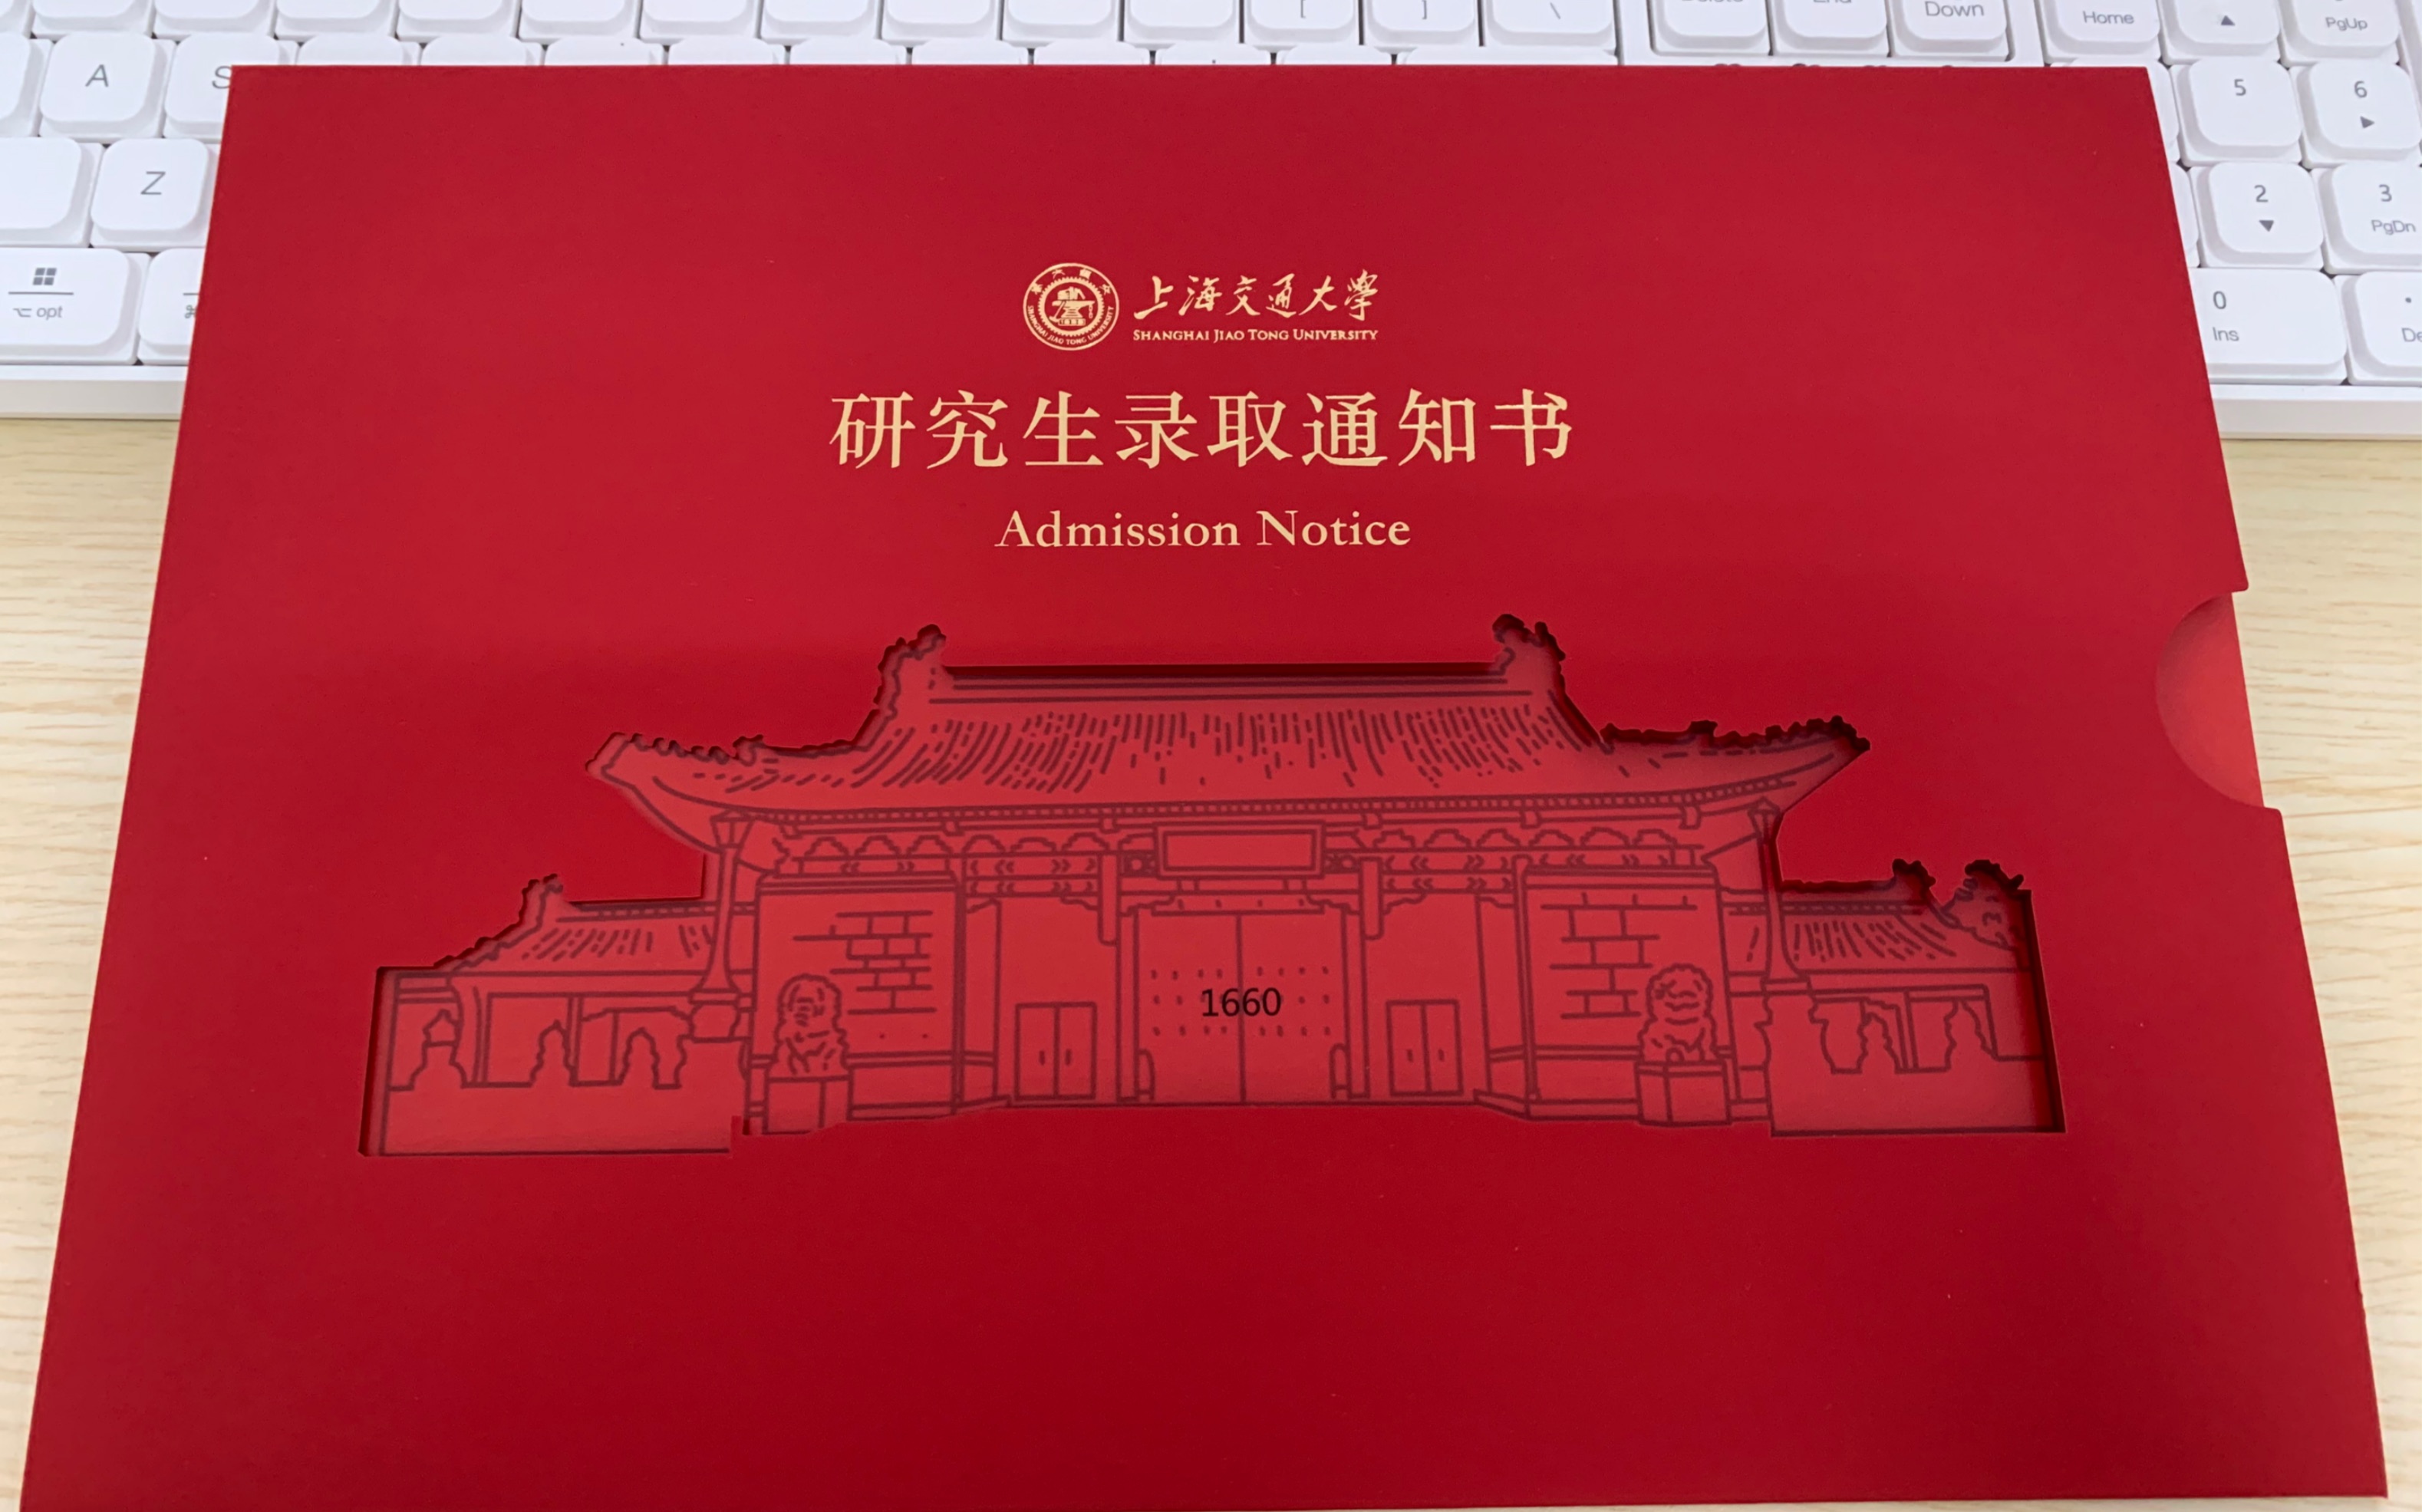 上海交大通知书图片